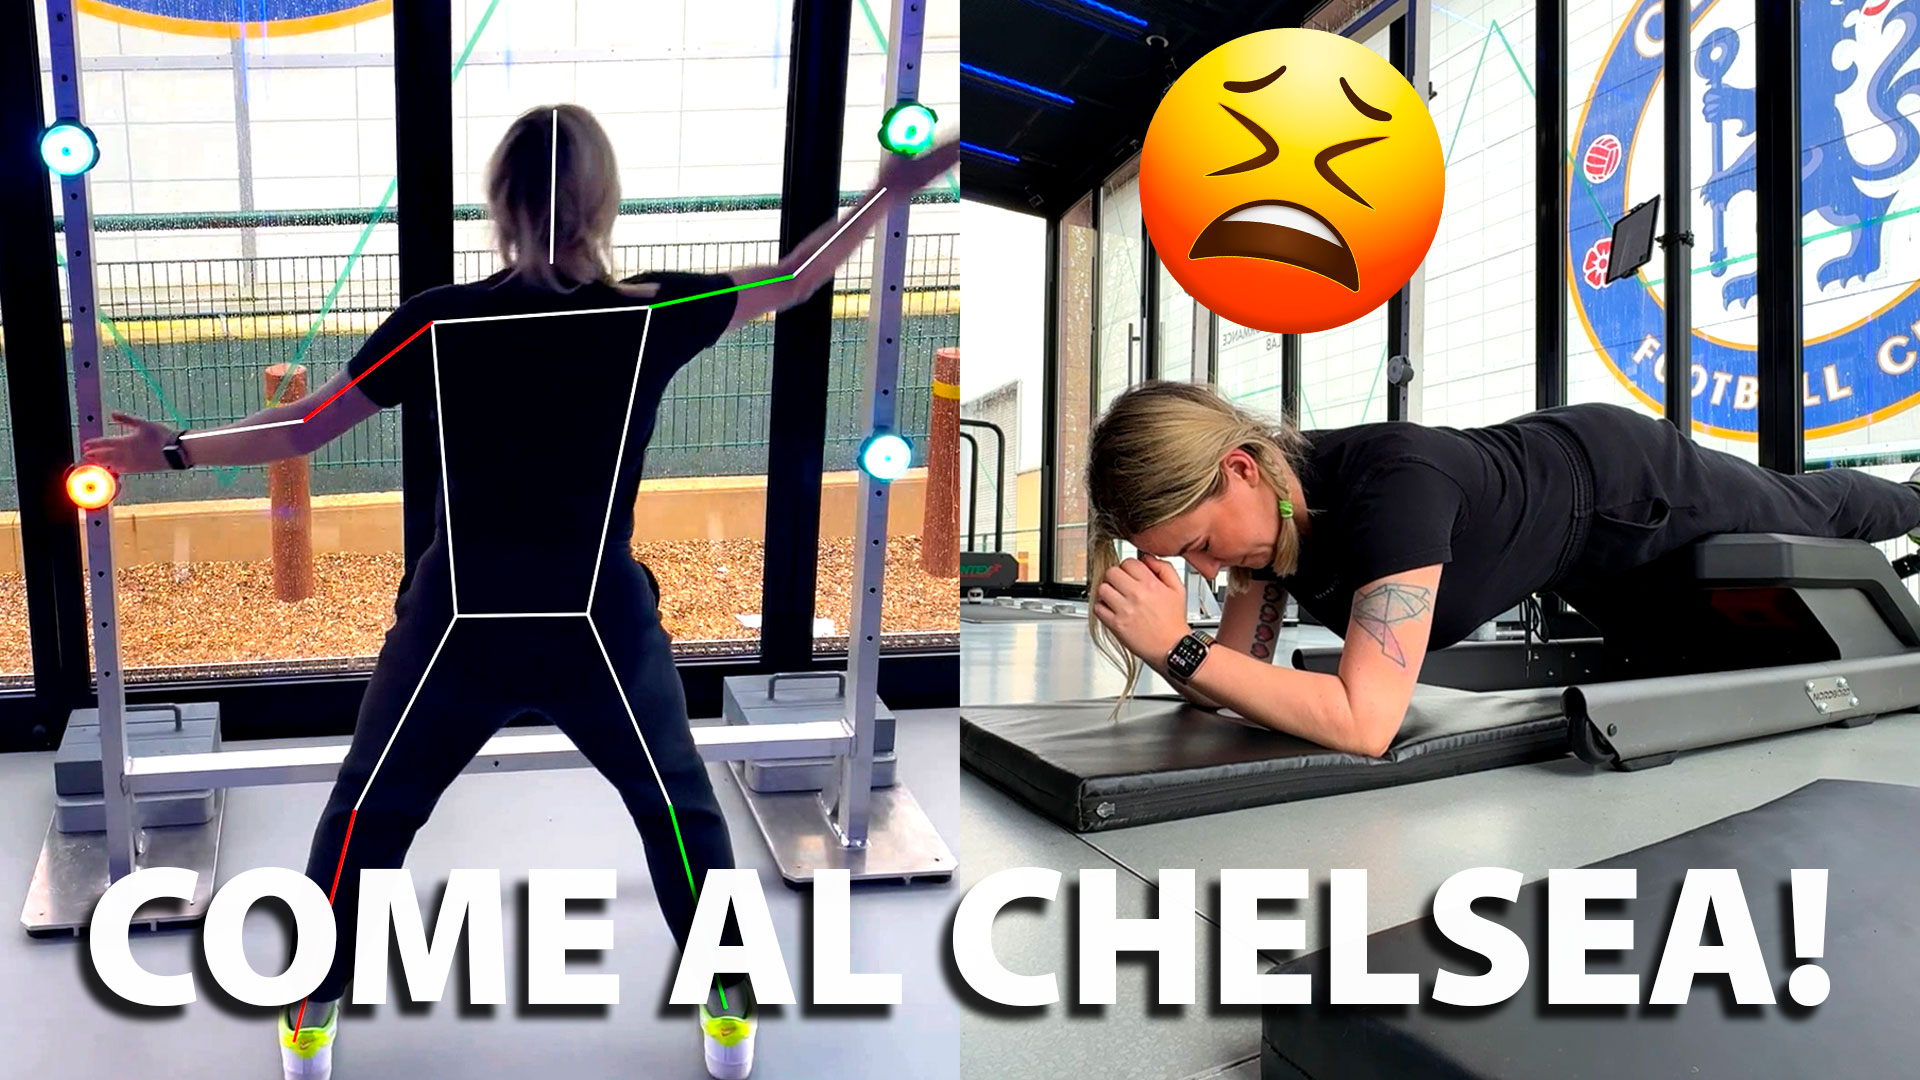 I calciatori del Chelsea usano questa tecnologia per allenarsi al meglio | Reportage thumbnail